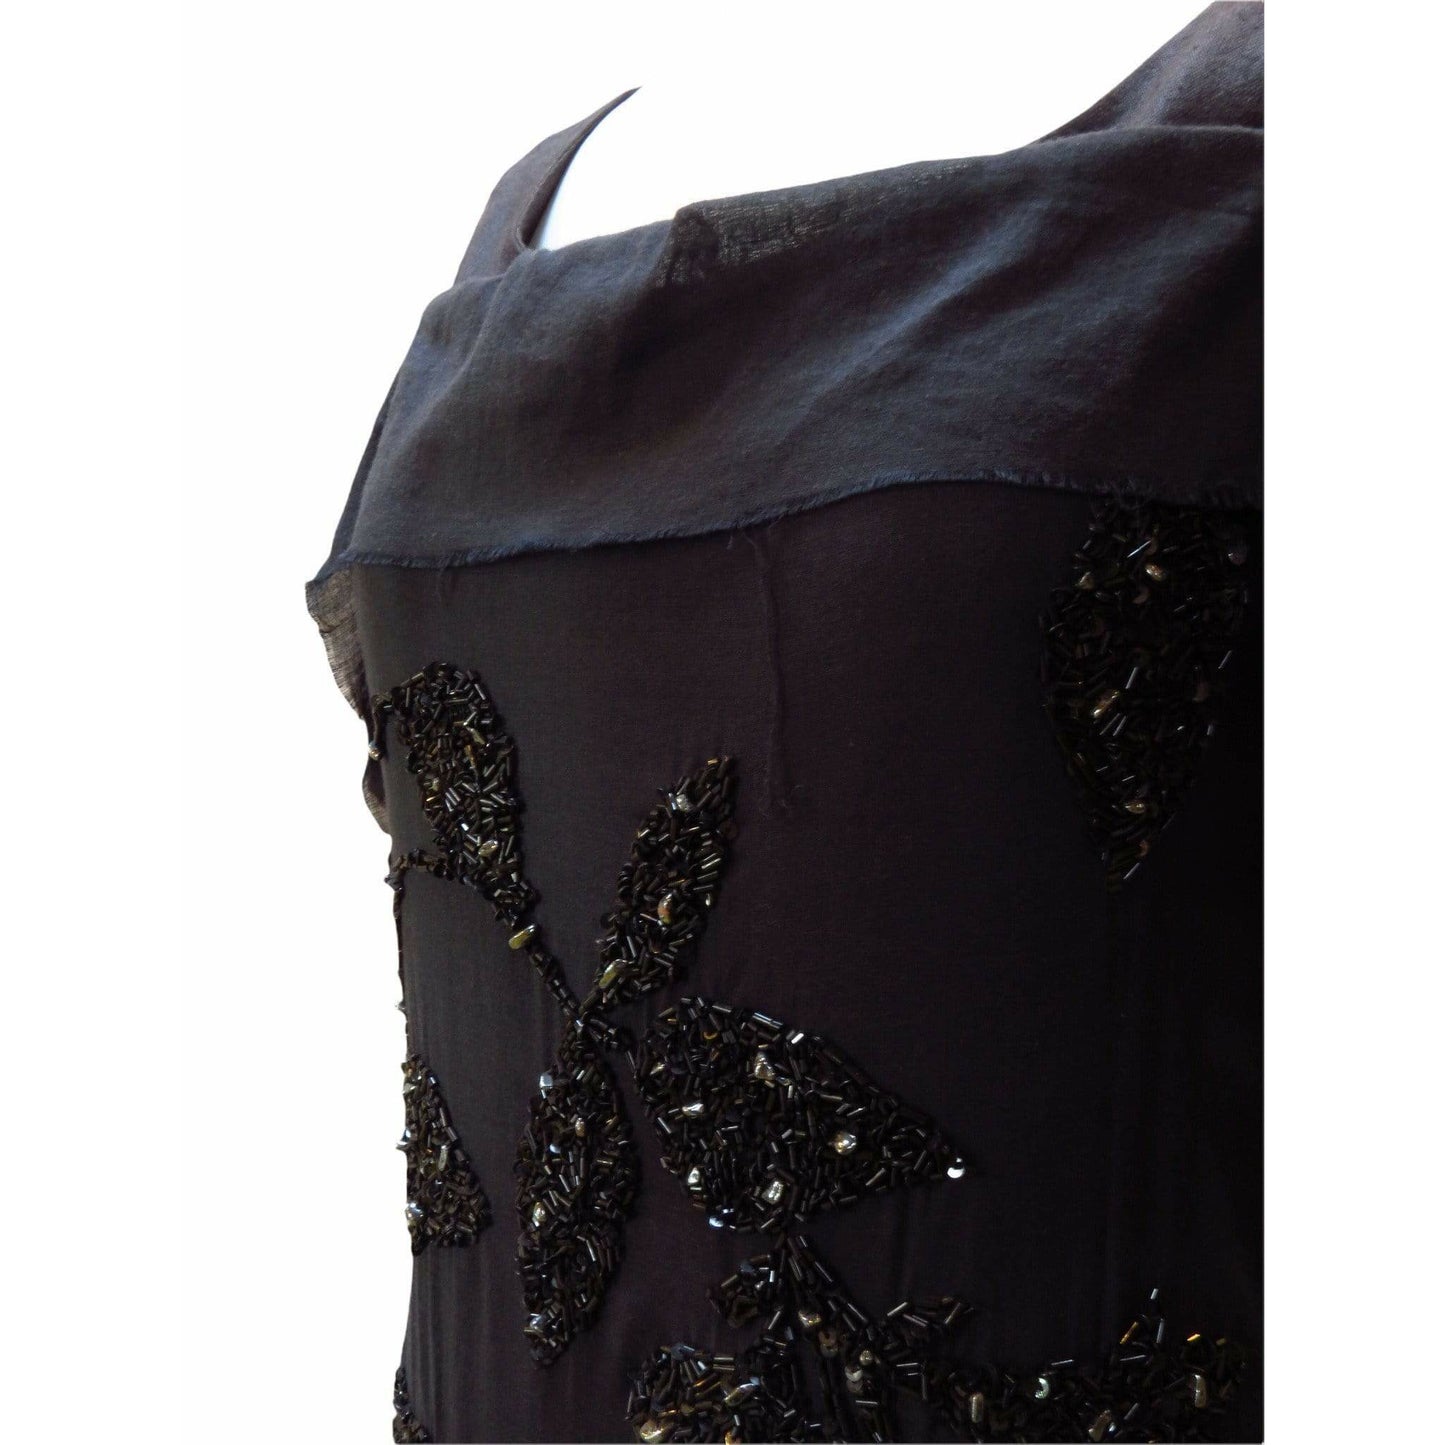 Dresses peachoo-krejberg-hand-embroidered-dress Black